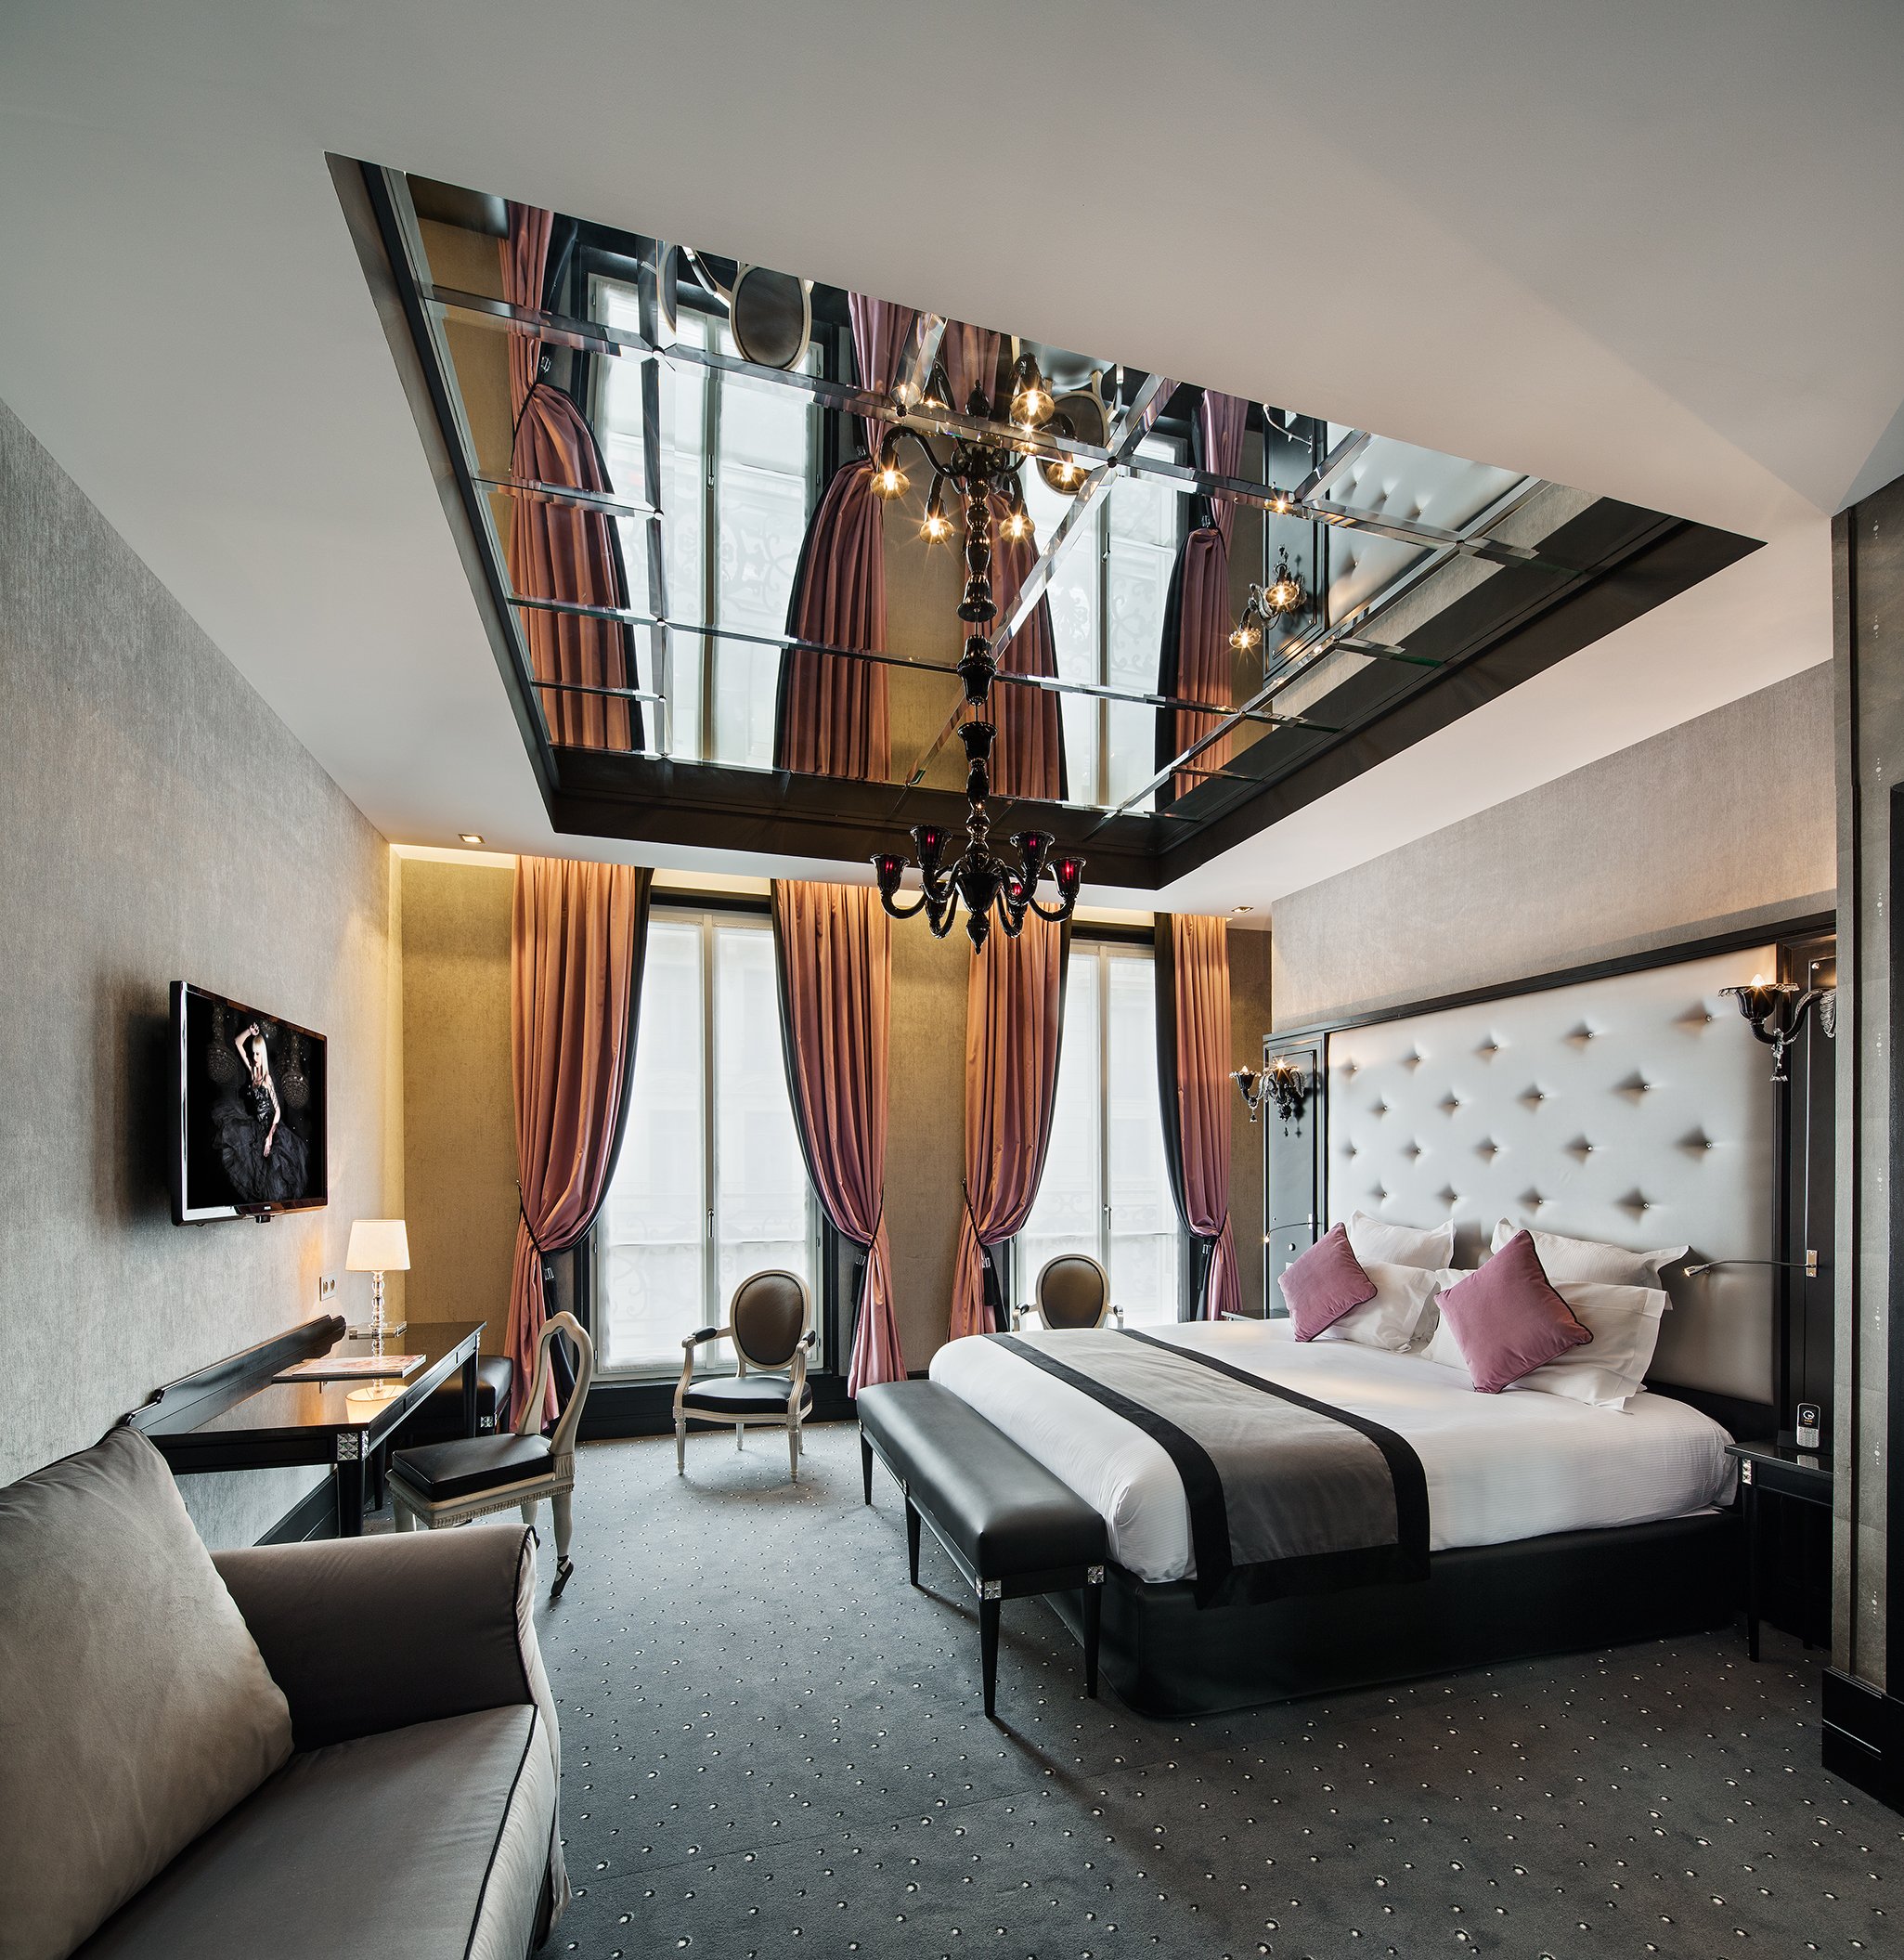 Maison Albar Hotels Le Diamond | Hôtel luxe romantique Paris﻿